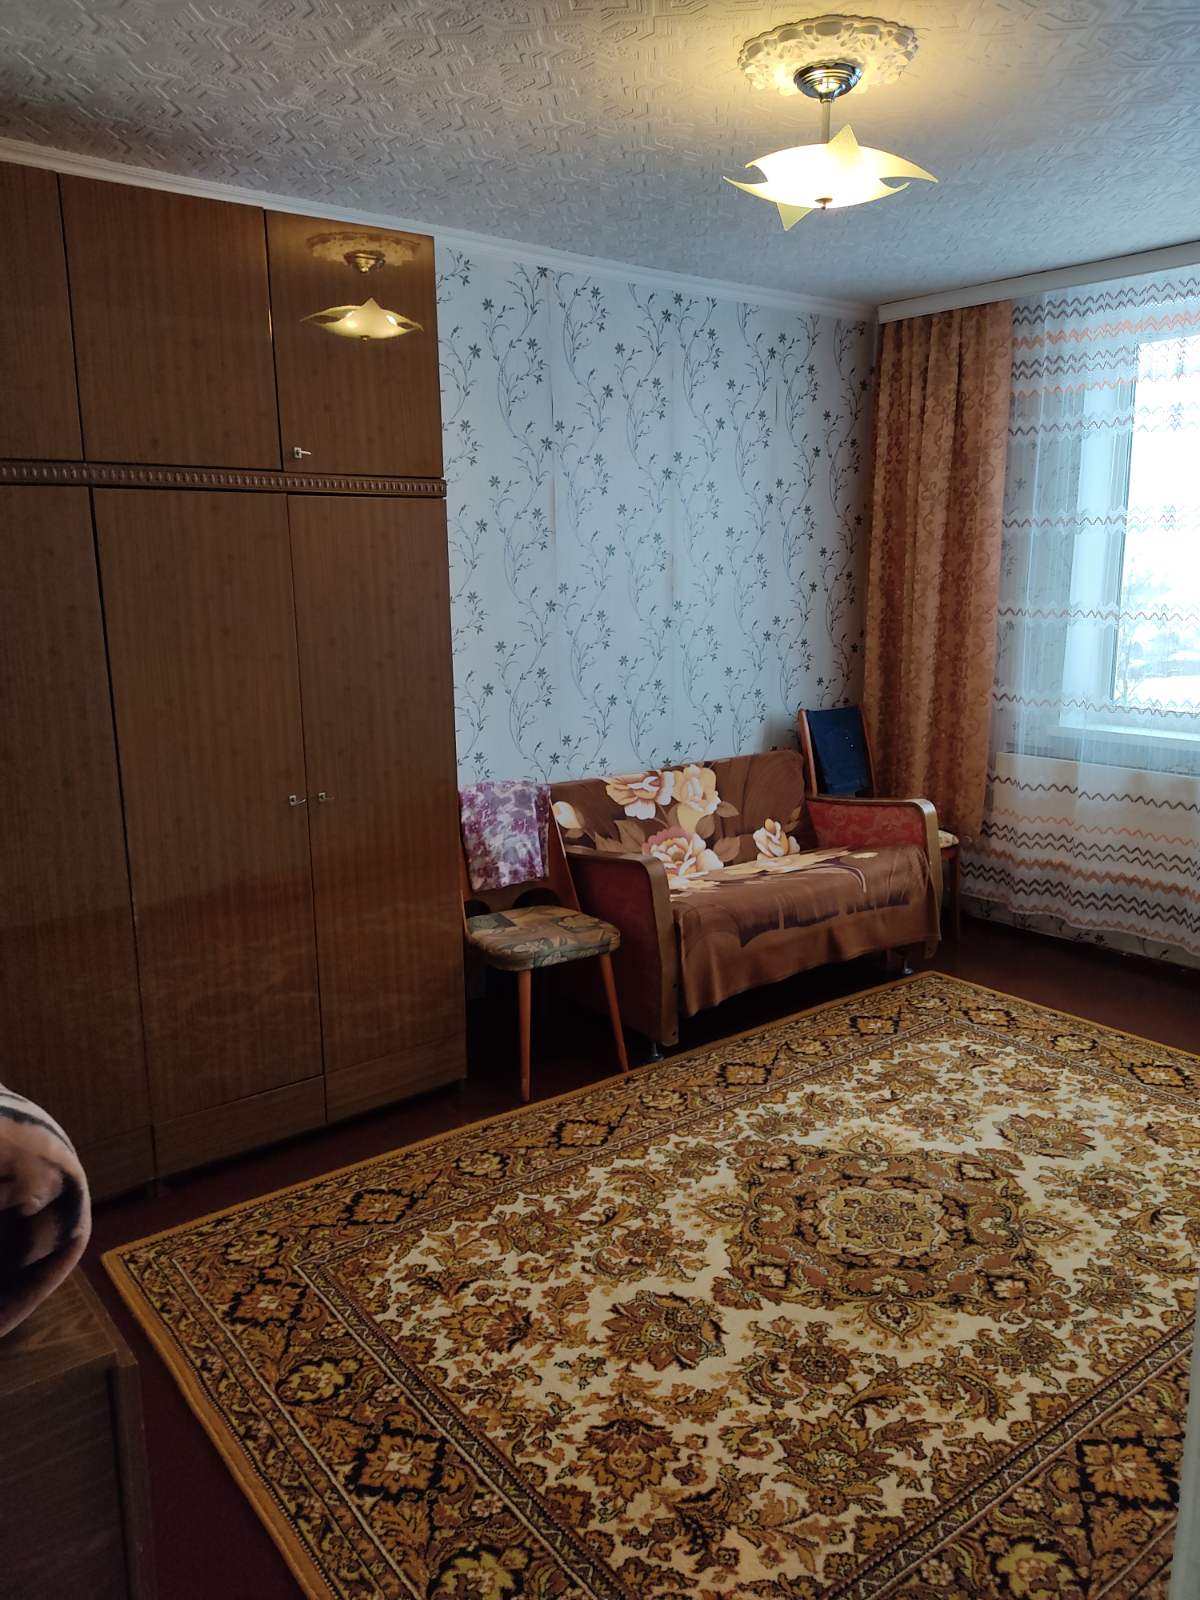 3-х комнатная квартира, 63,6 м², г. Воложин, Минская обл. - фотография